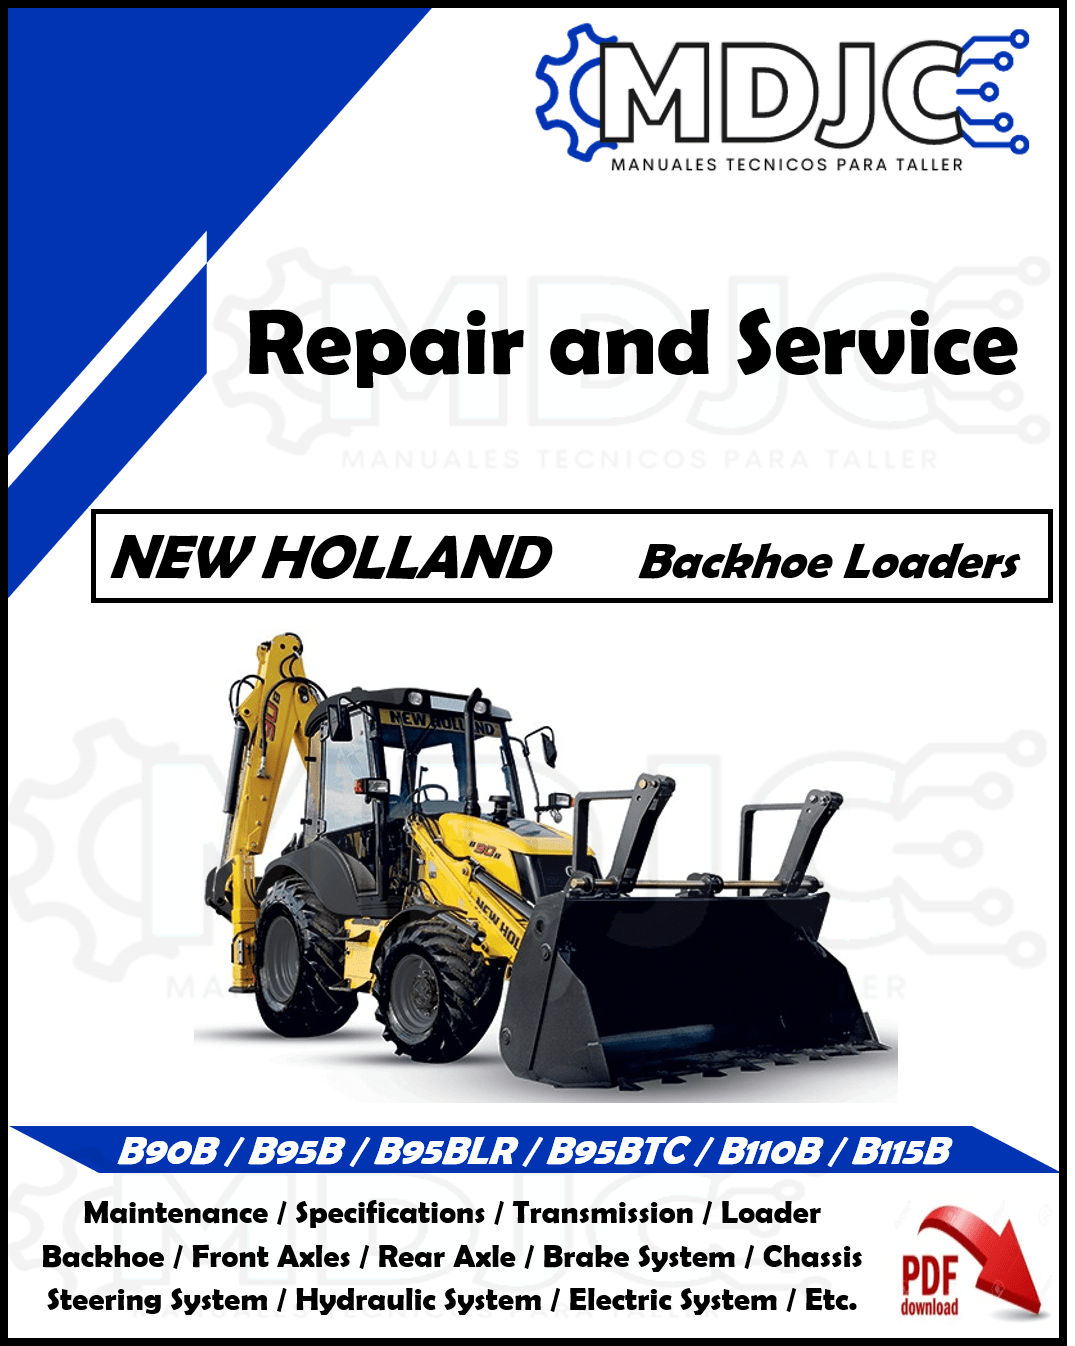 Manual de Taller (Reparación y Servicio) New Holland B90B / B95B / B95BLR / B95BTC / B110B / B115B